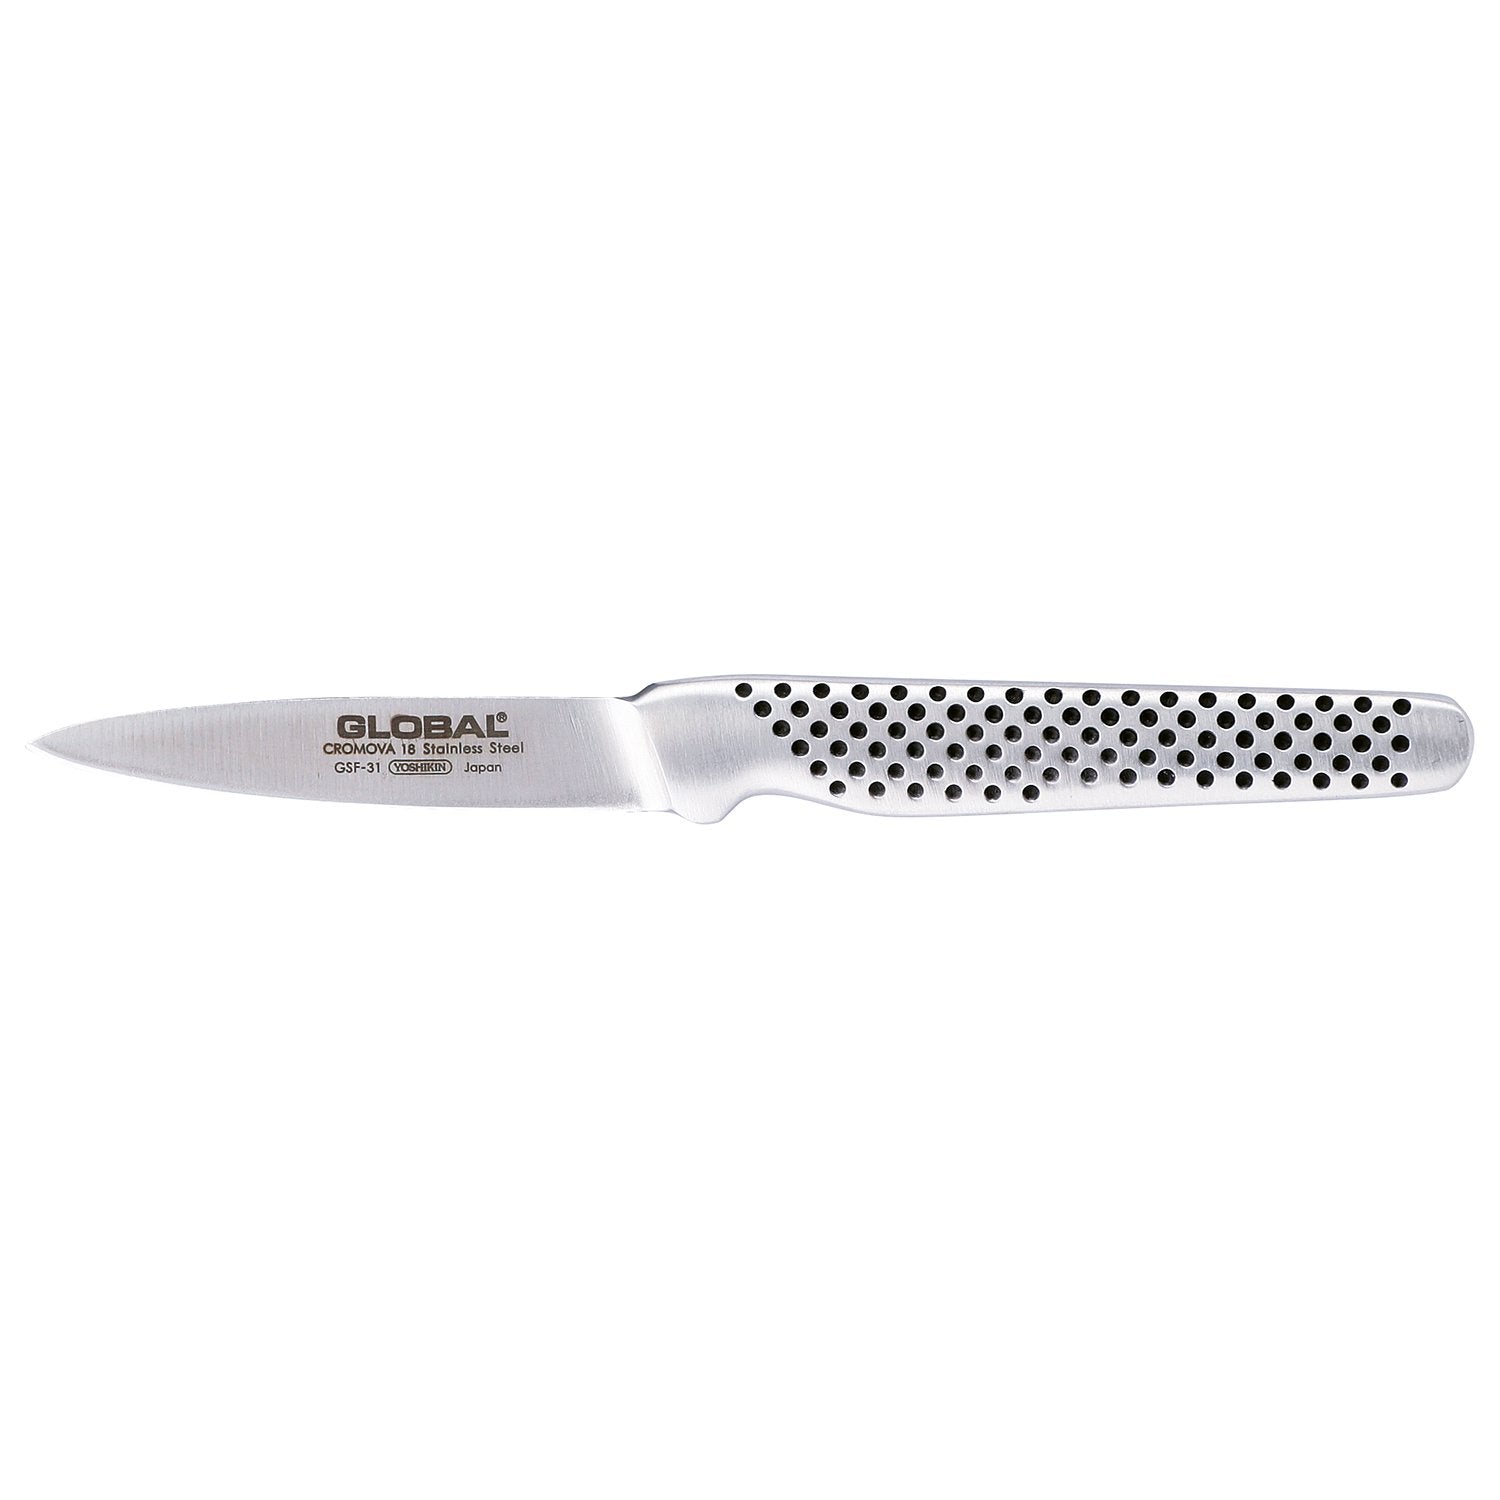 Global GSF 31 Rengjøringskniv, 8 cm